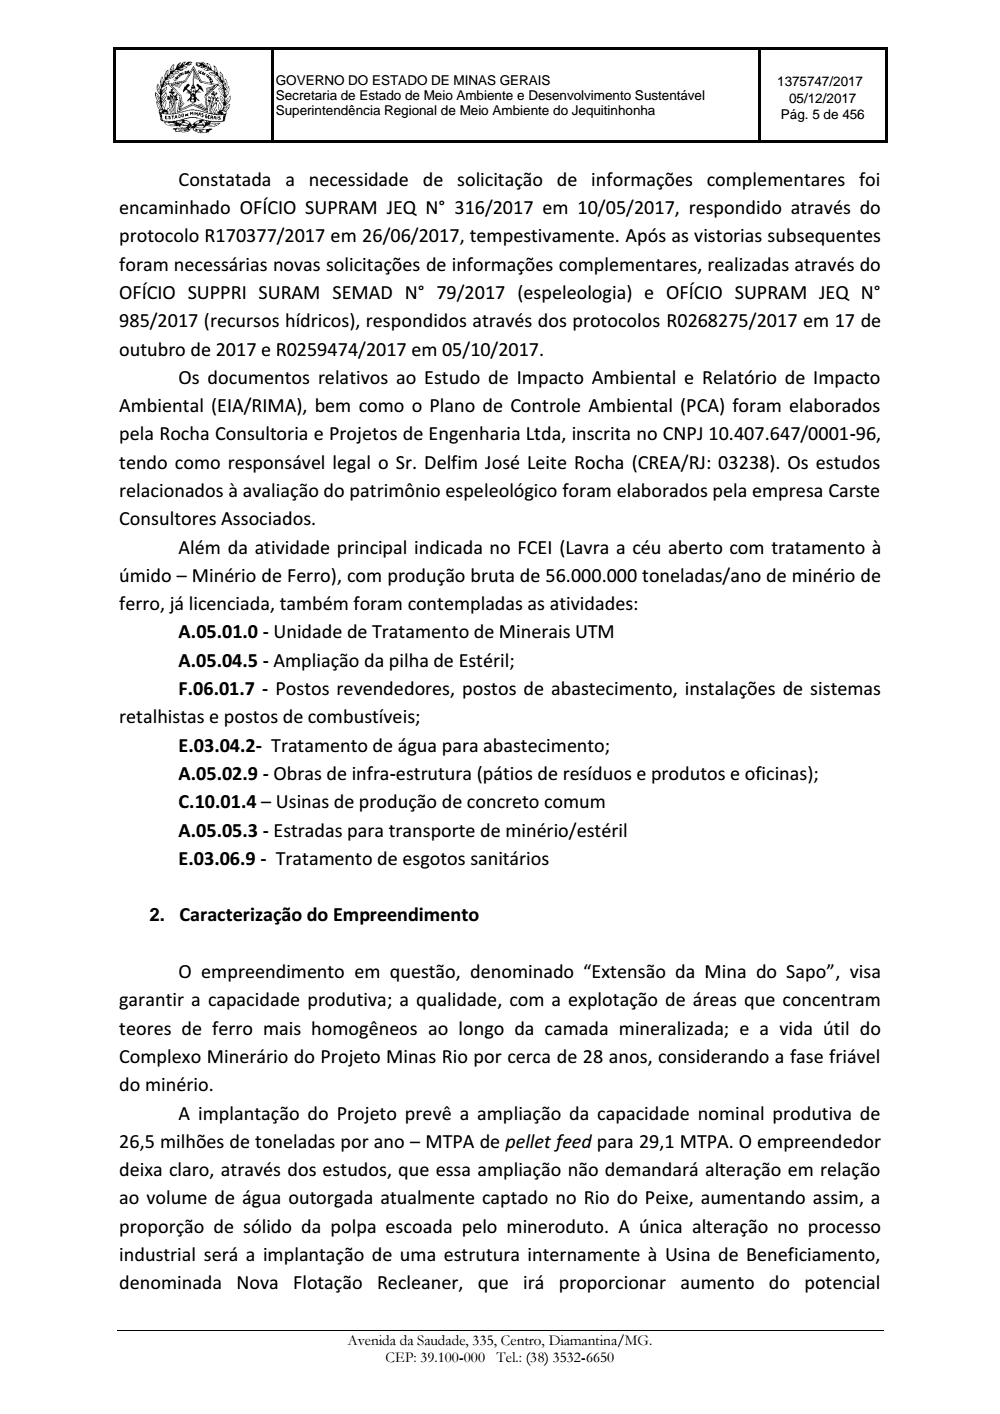 Page 5 from Parecer único da Secretaria de estado de Meio Ambiente e Desenvolvimento Sustentável (SEMAD)